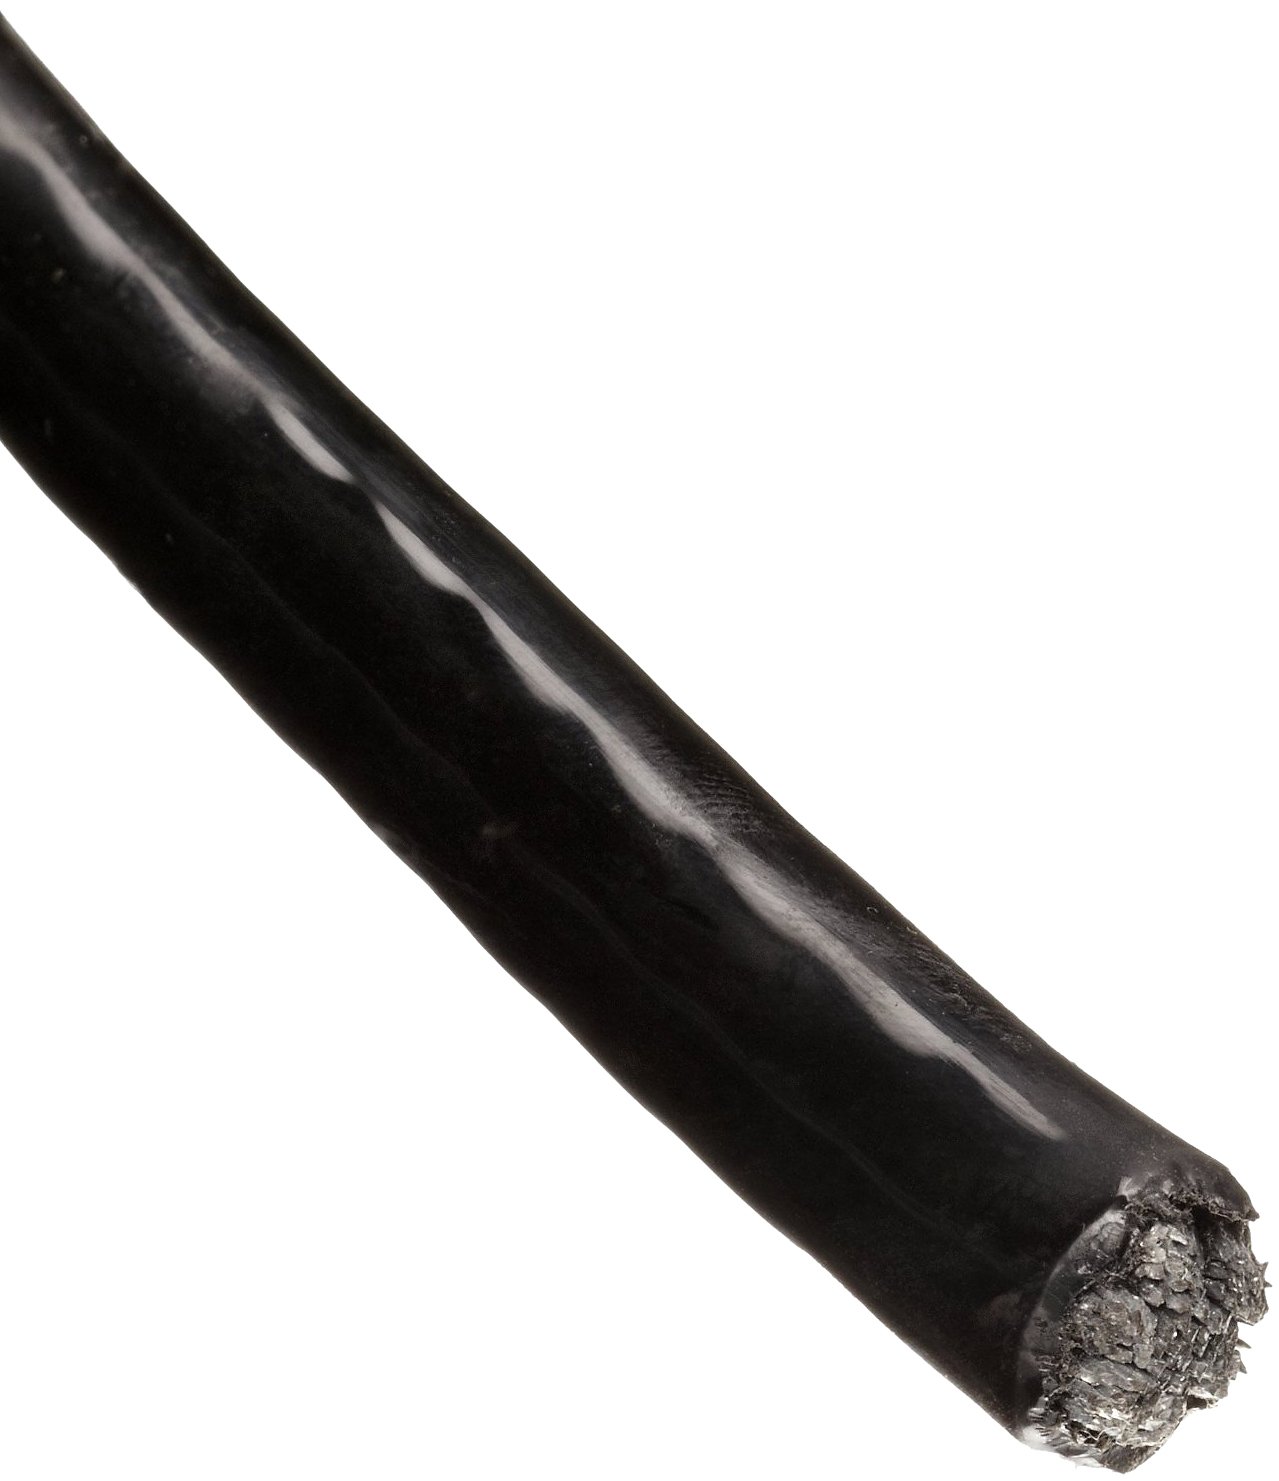 Трос в ПВХ оболочке 3,5 мм непрозрачный черный - фото